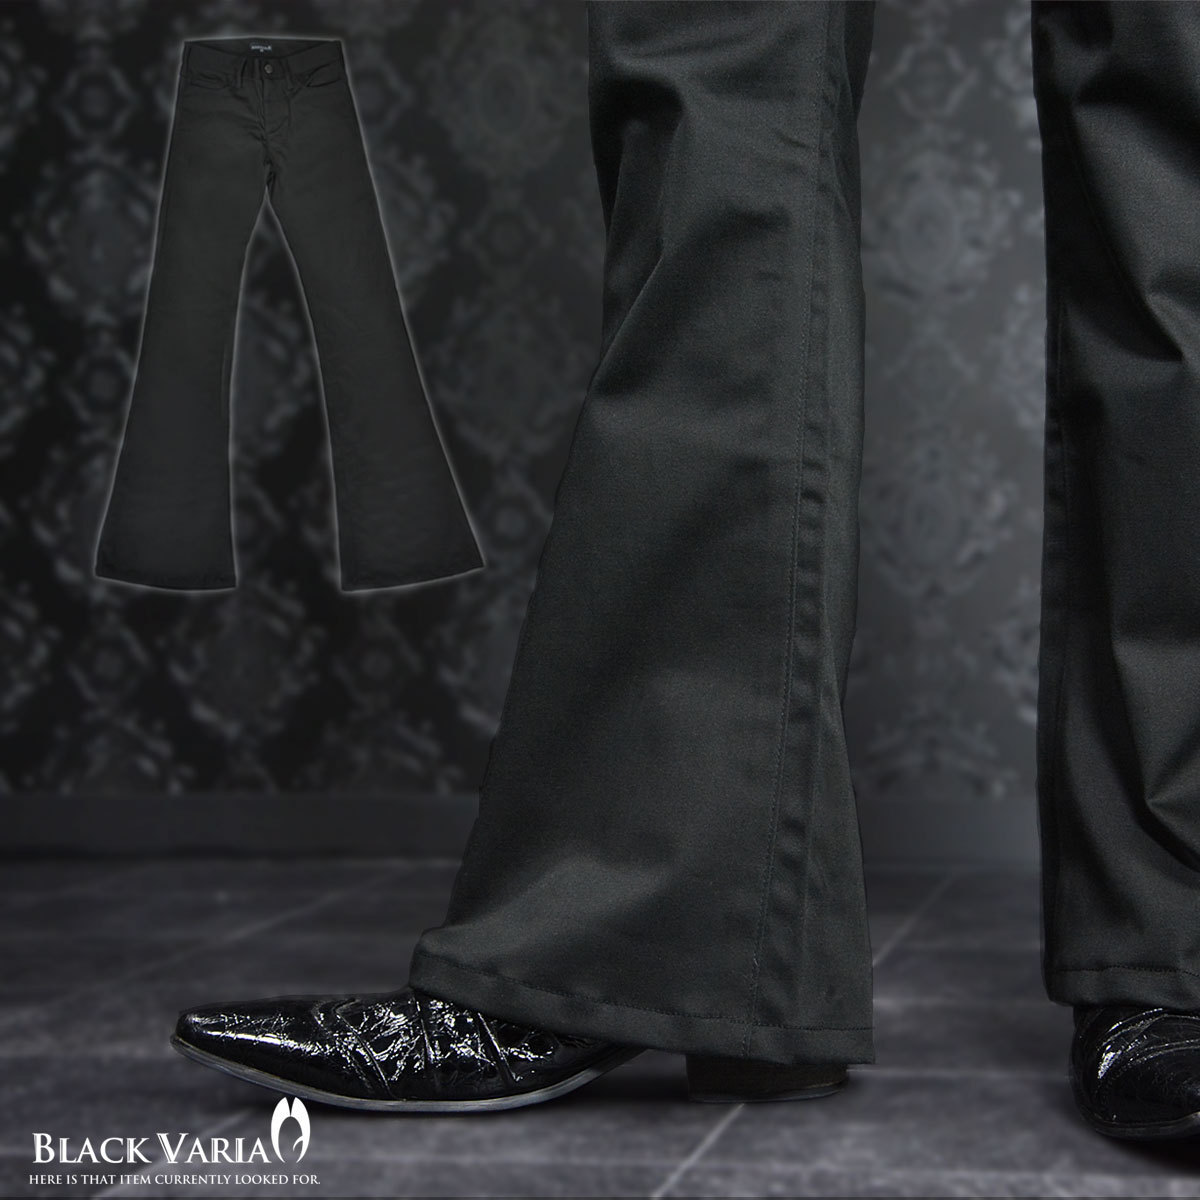 152151-2 BLACK VARIA ベルボトム ストレッチフレアパンツ 無地 綿サテン メンズ(ブラック黒) XL32 パンタロン ラッパ 股上浅め